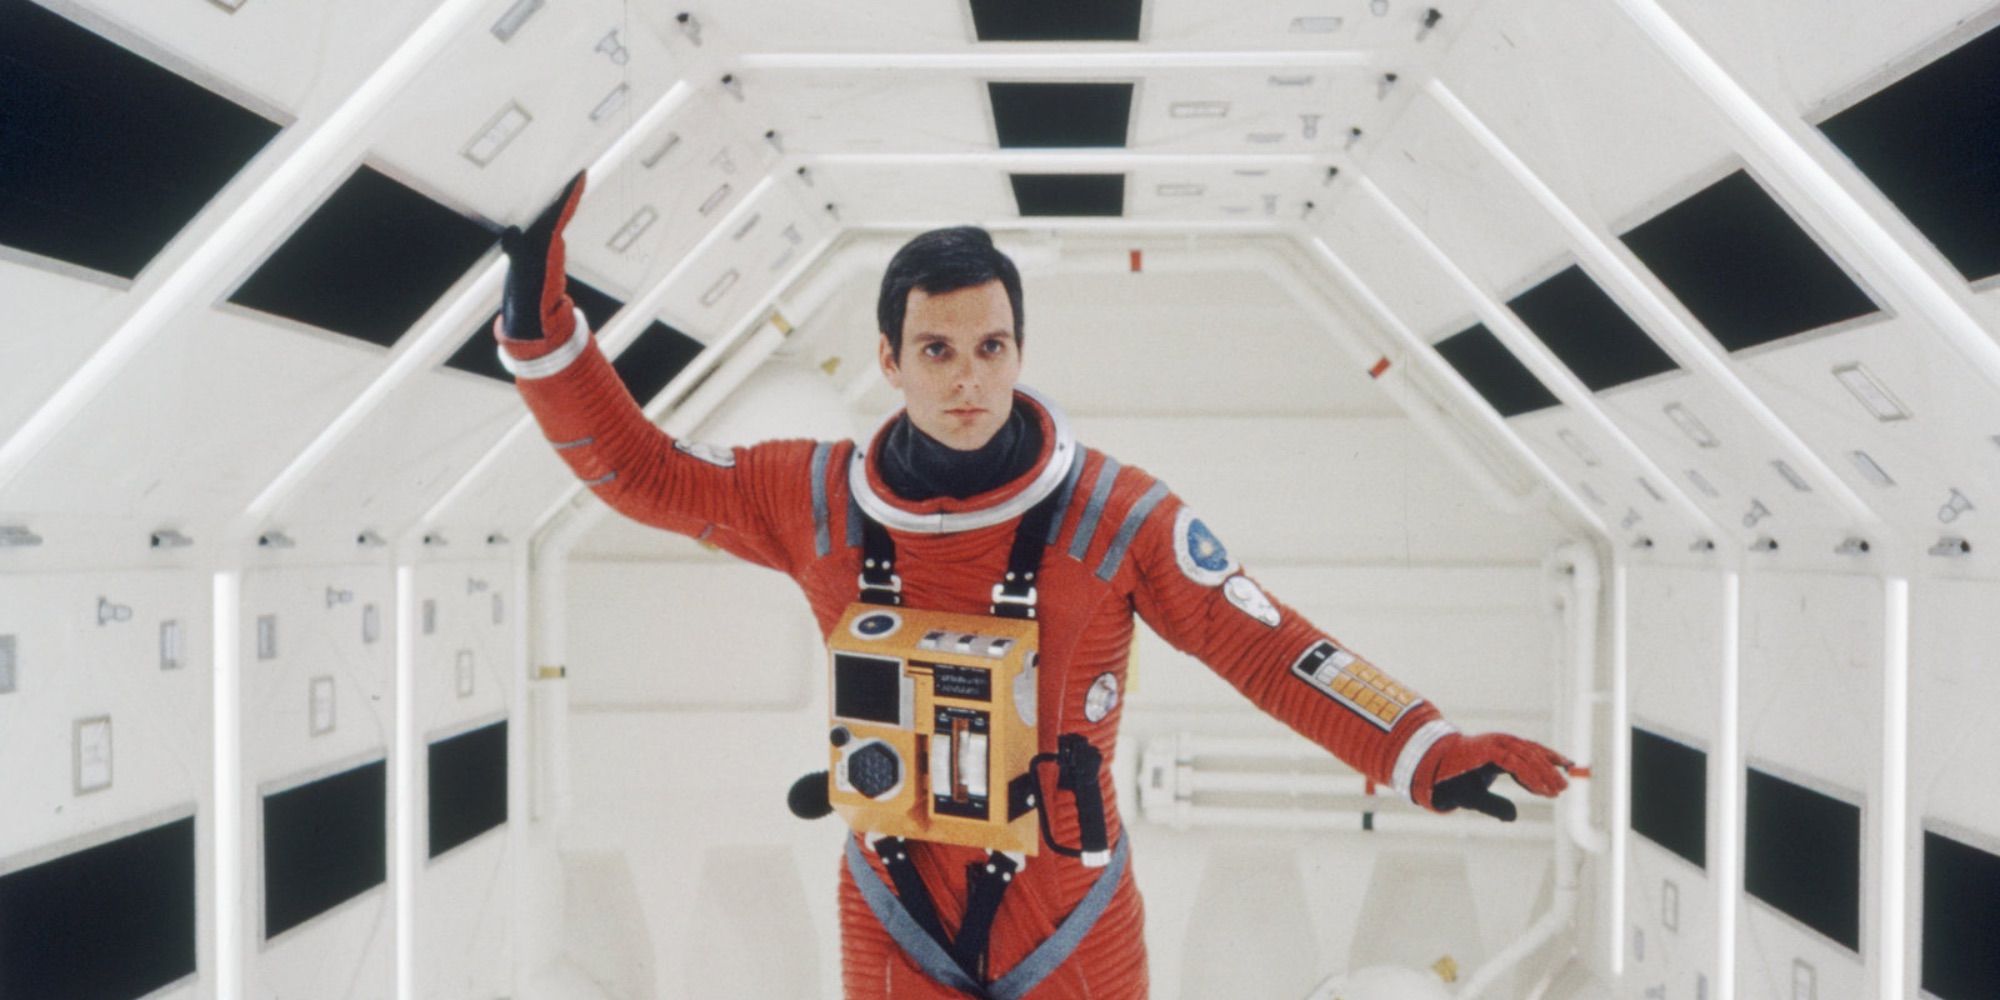 Un astronaute marchant dans le couloir d'un vaisseau spatial en 2001 : l'Odyssée de l'espace.